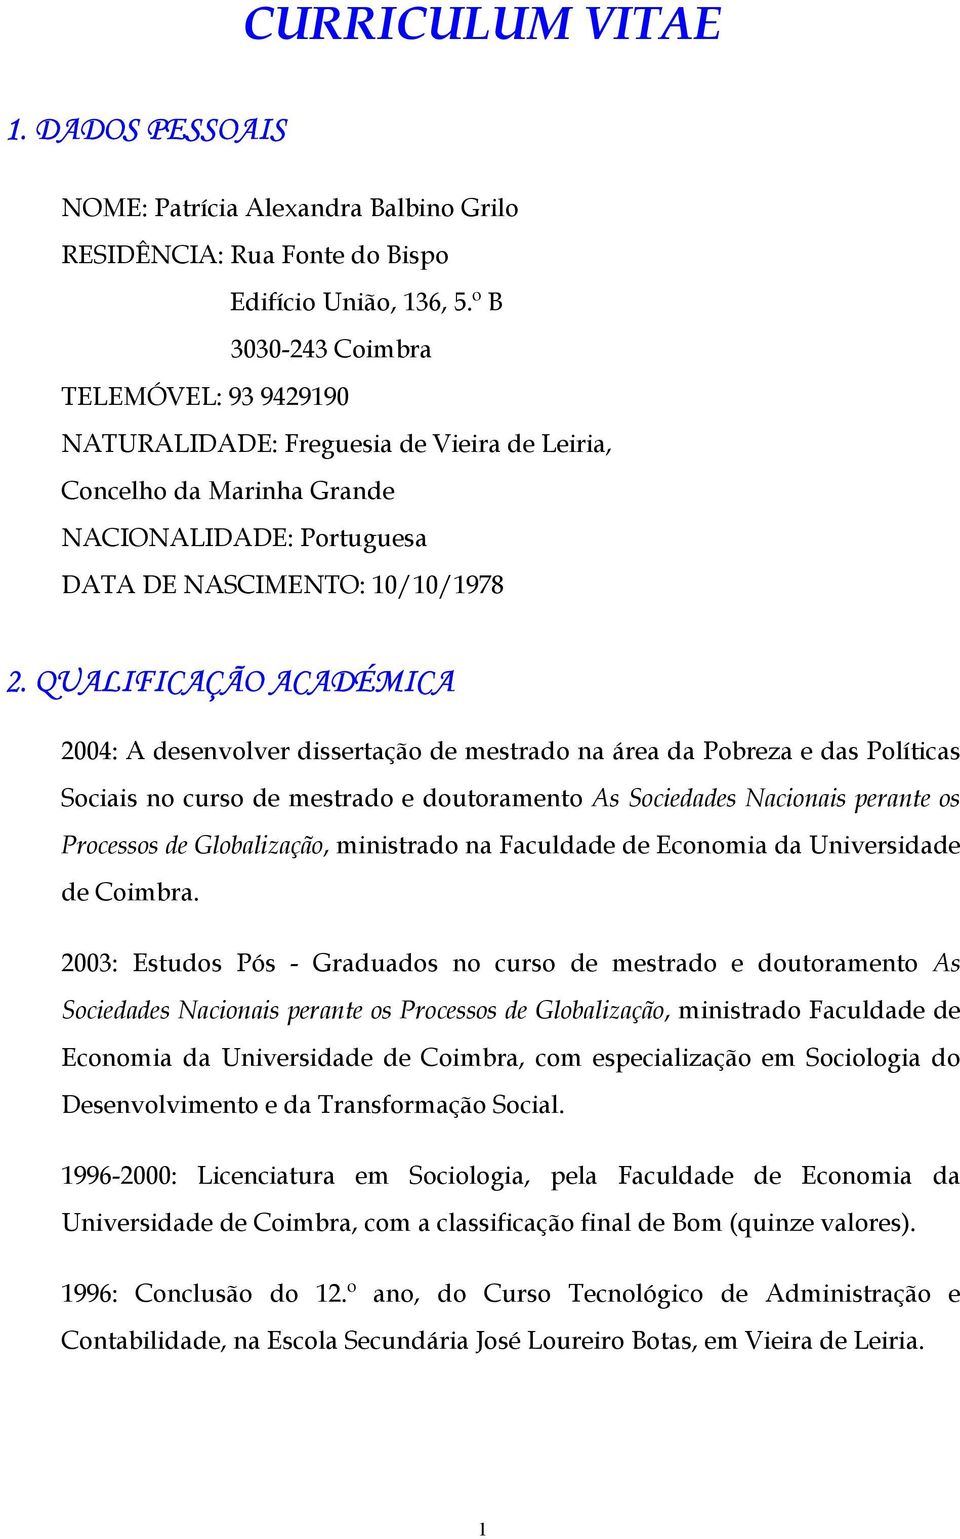 QUALIFICAÇÃO ACADÉMICA 2004: A desenvolver dissertação de mestrado na área da Pobreza e das Políticas Sociais no curso de mestrado e doutoramento As Sociedades Nacionais perante os Processos de